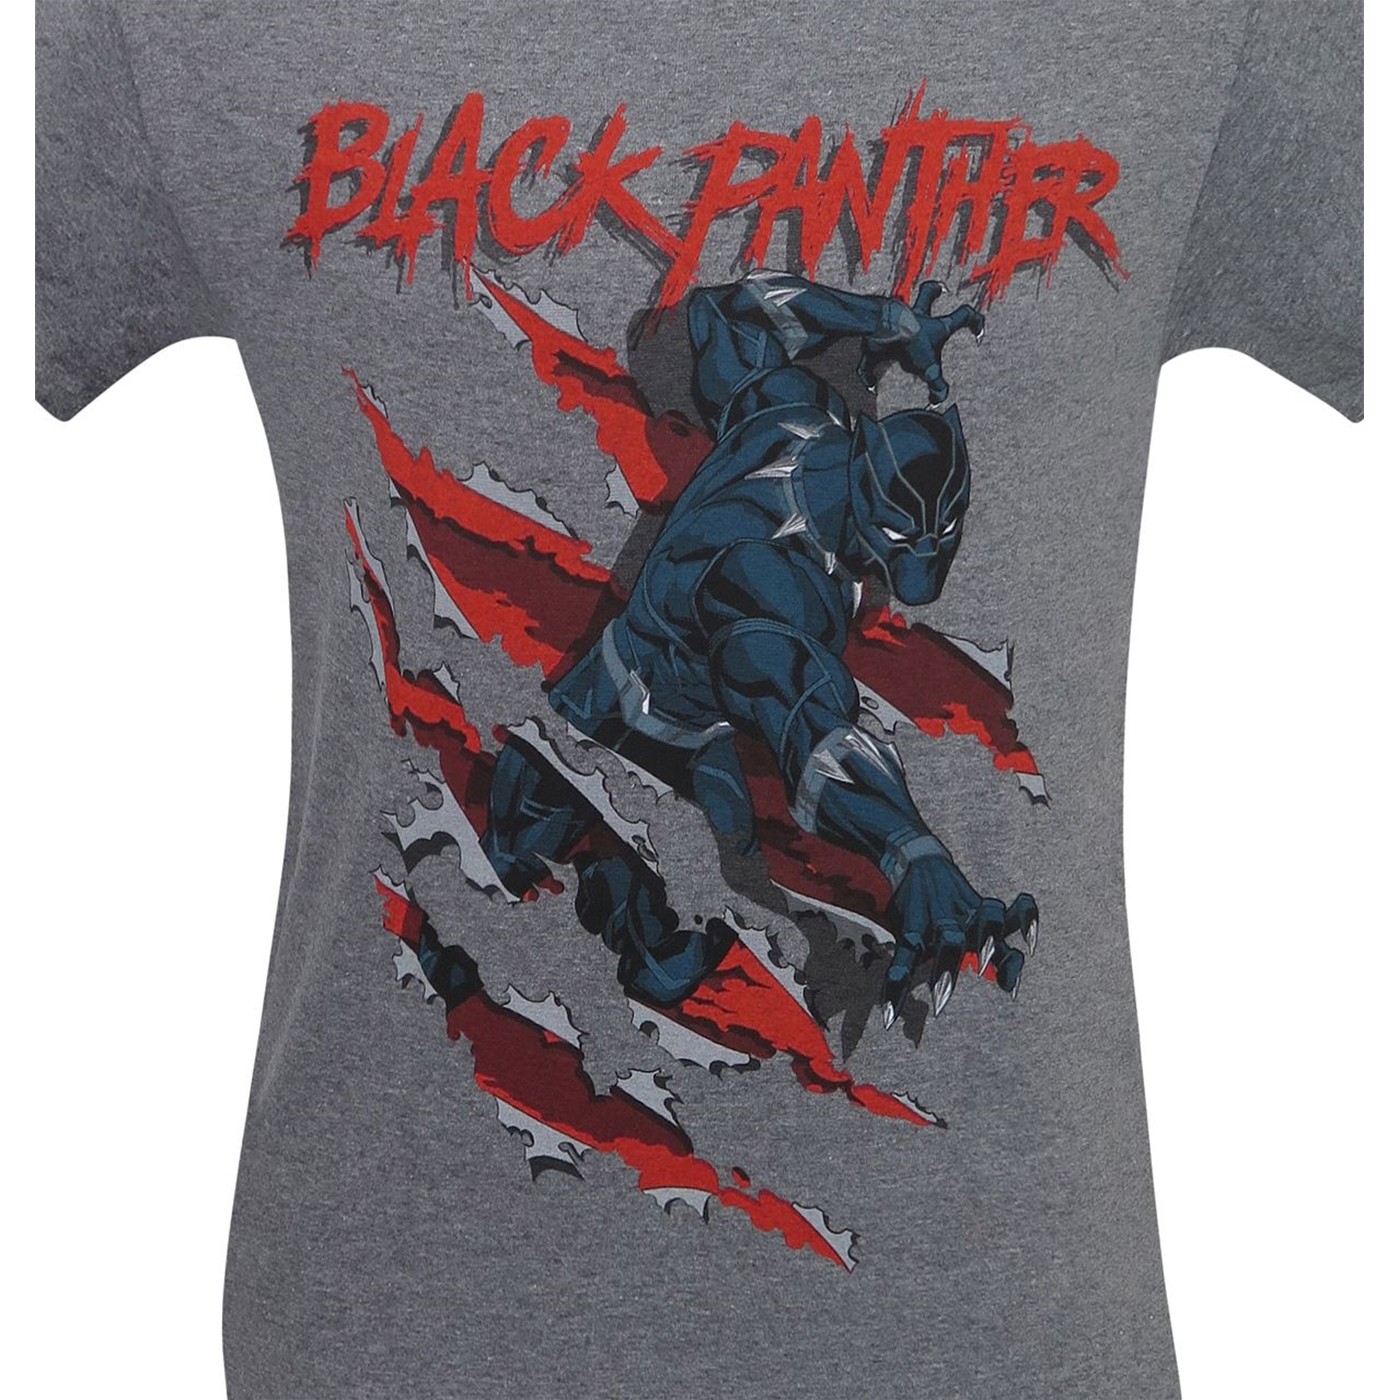 Black Panther Clawing Through Men's T-Shirt